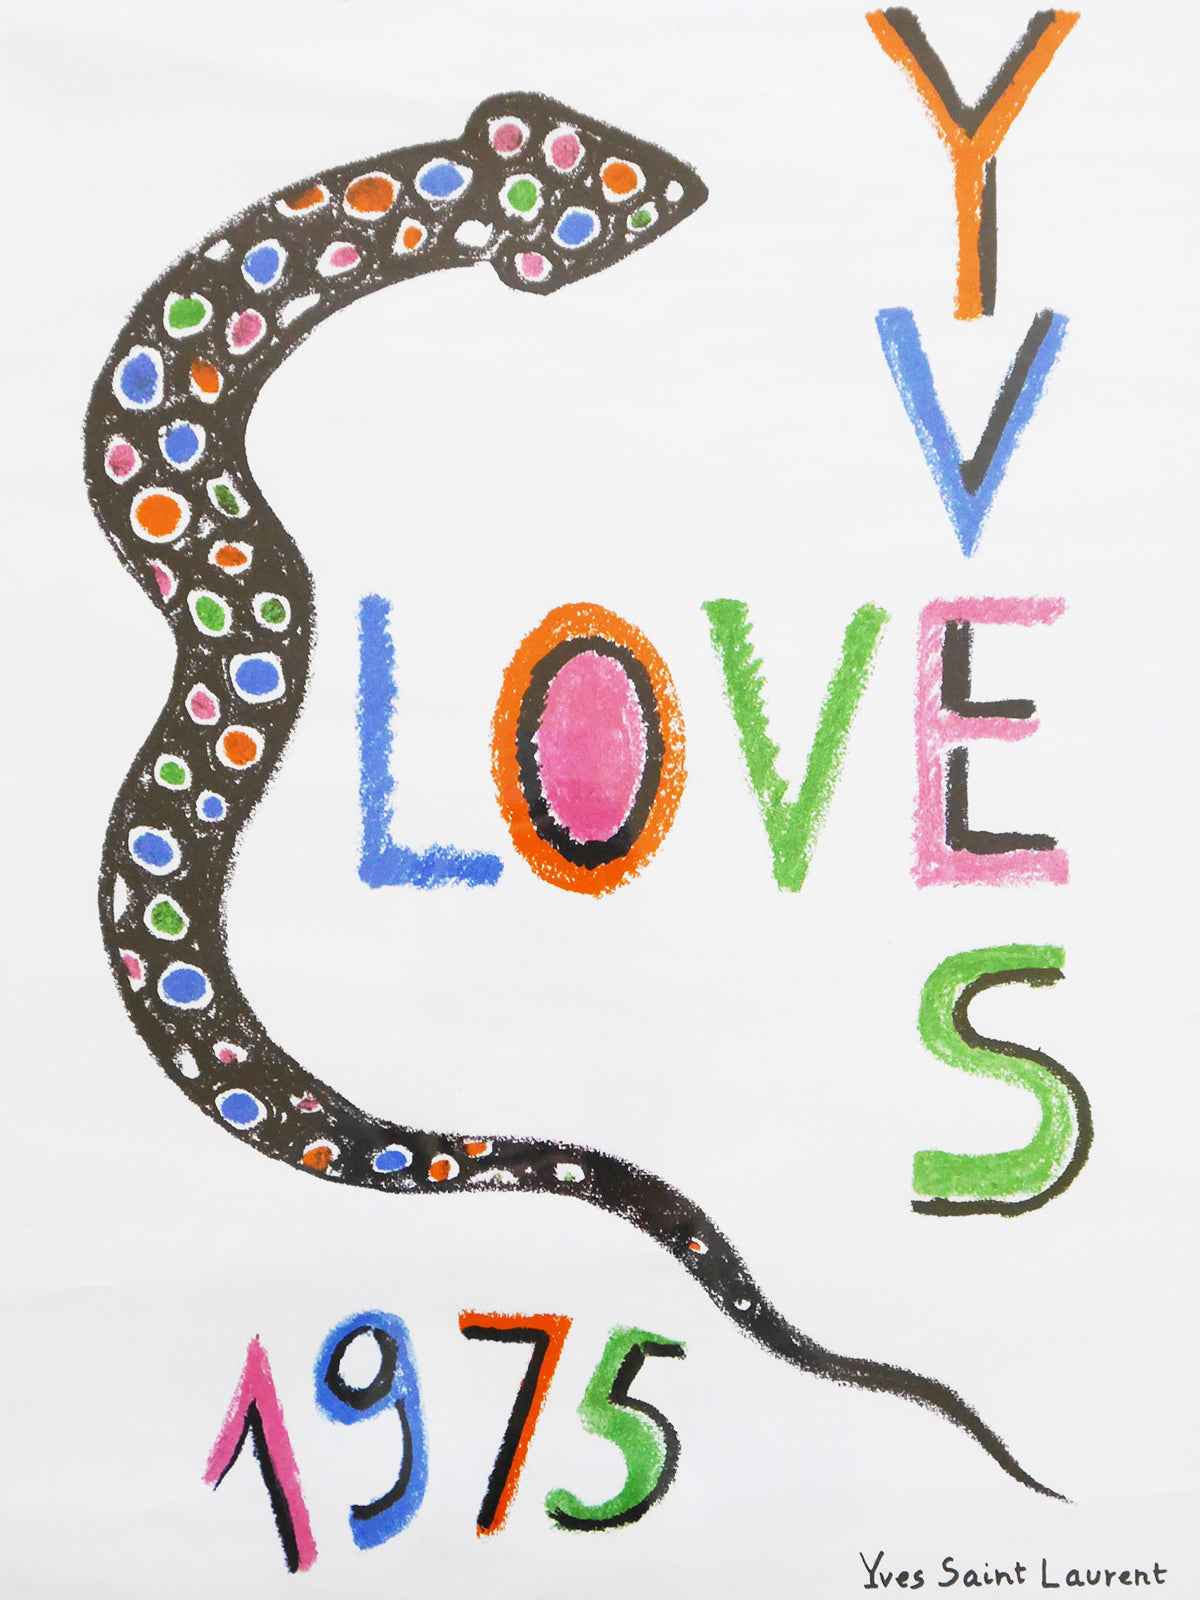 YVES SAINT LAURENT "LOVE" Poster 1975